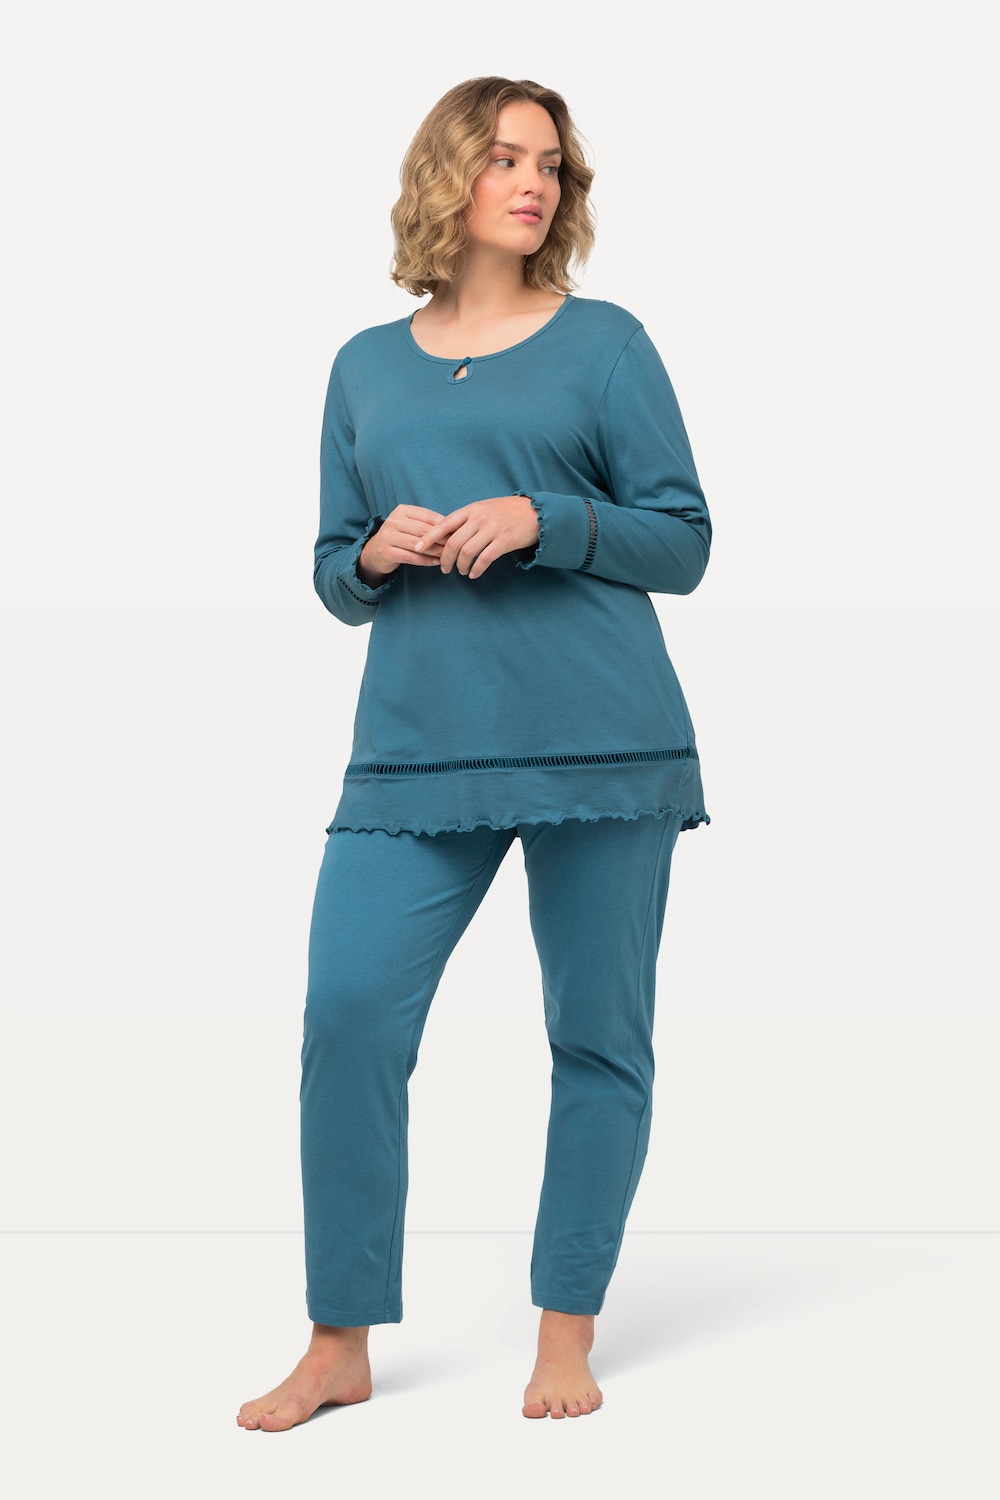 Grote Maten pyjama, Dames, turquoise, Maat: 66/68, Katoen, Ulla Popken